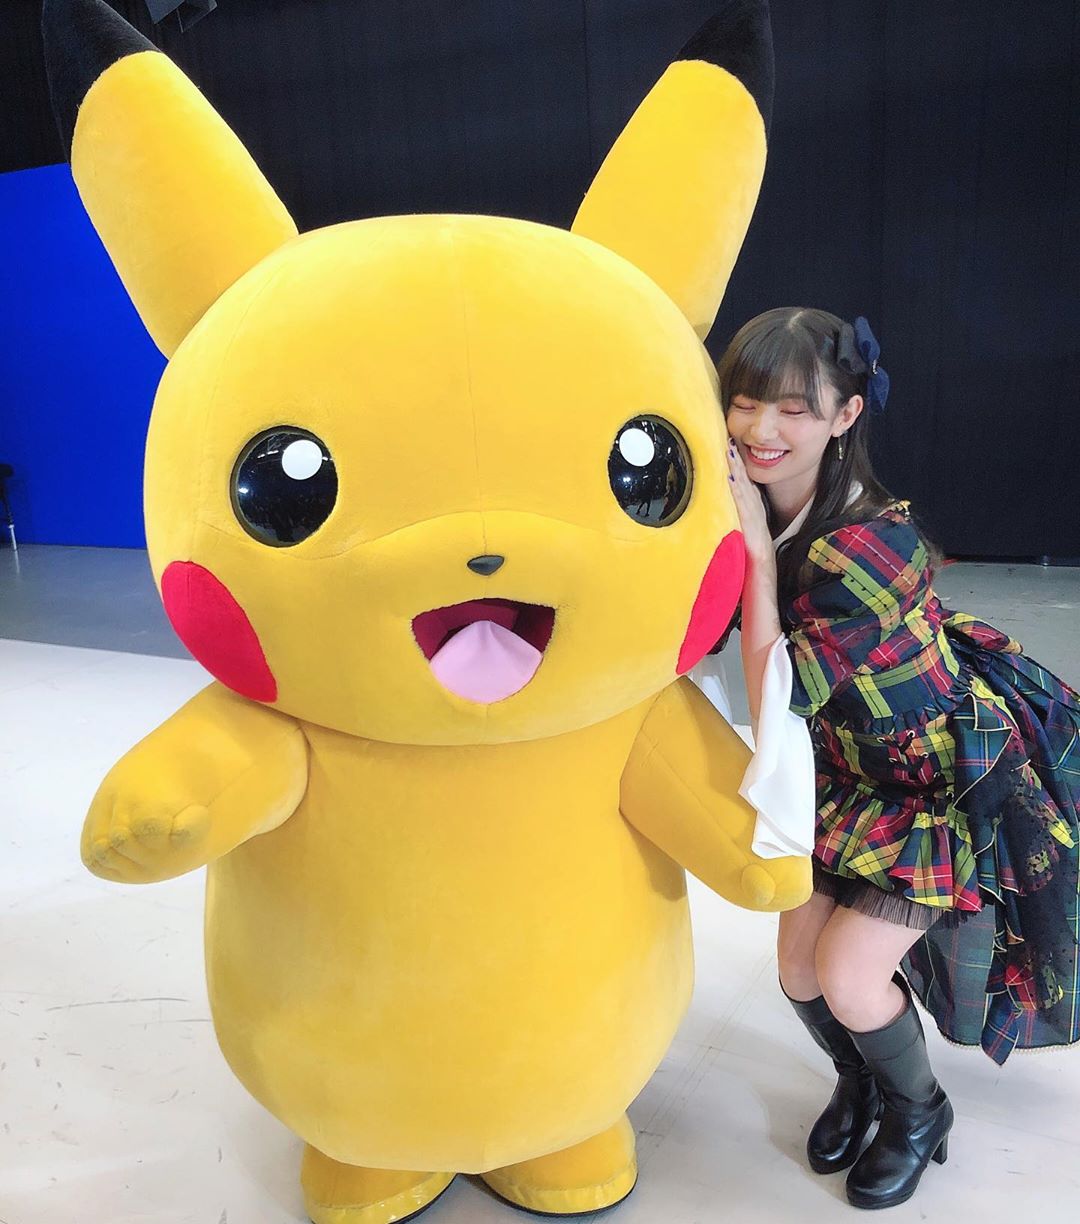 武藤十夢 紅白歌合戦 で楽屋が近くて奇跡的に写真撮ってもらえた幸せ ピカチュウ Pikachu Pokemon Wacoca